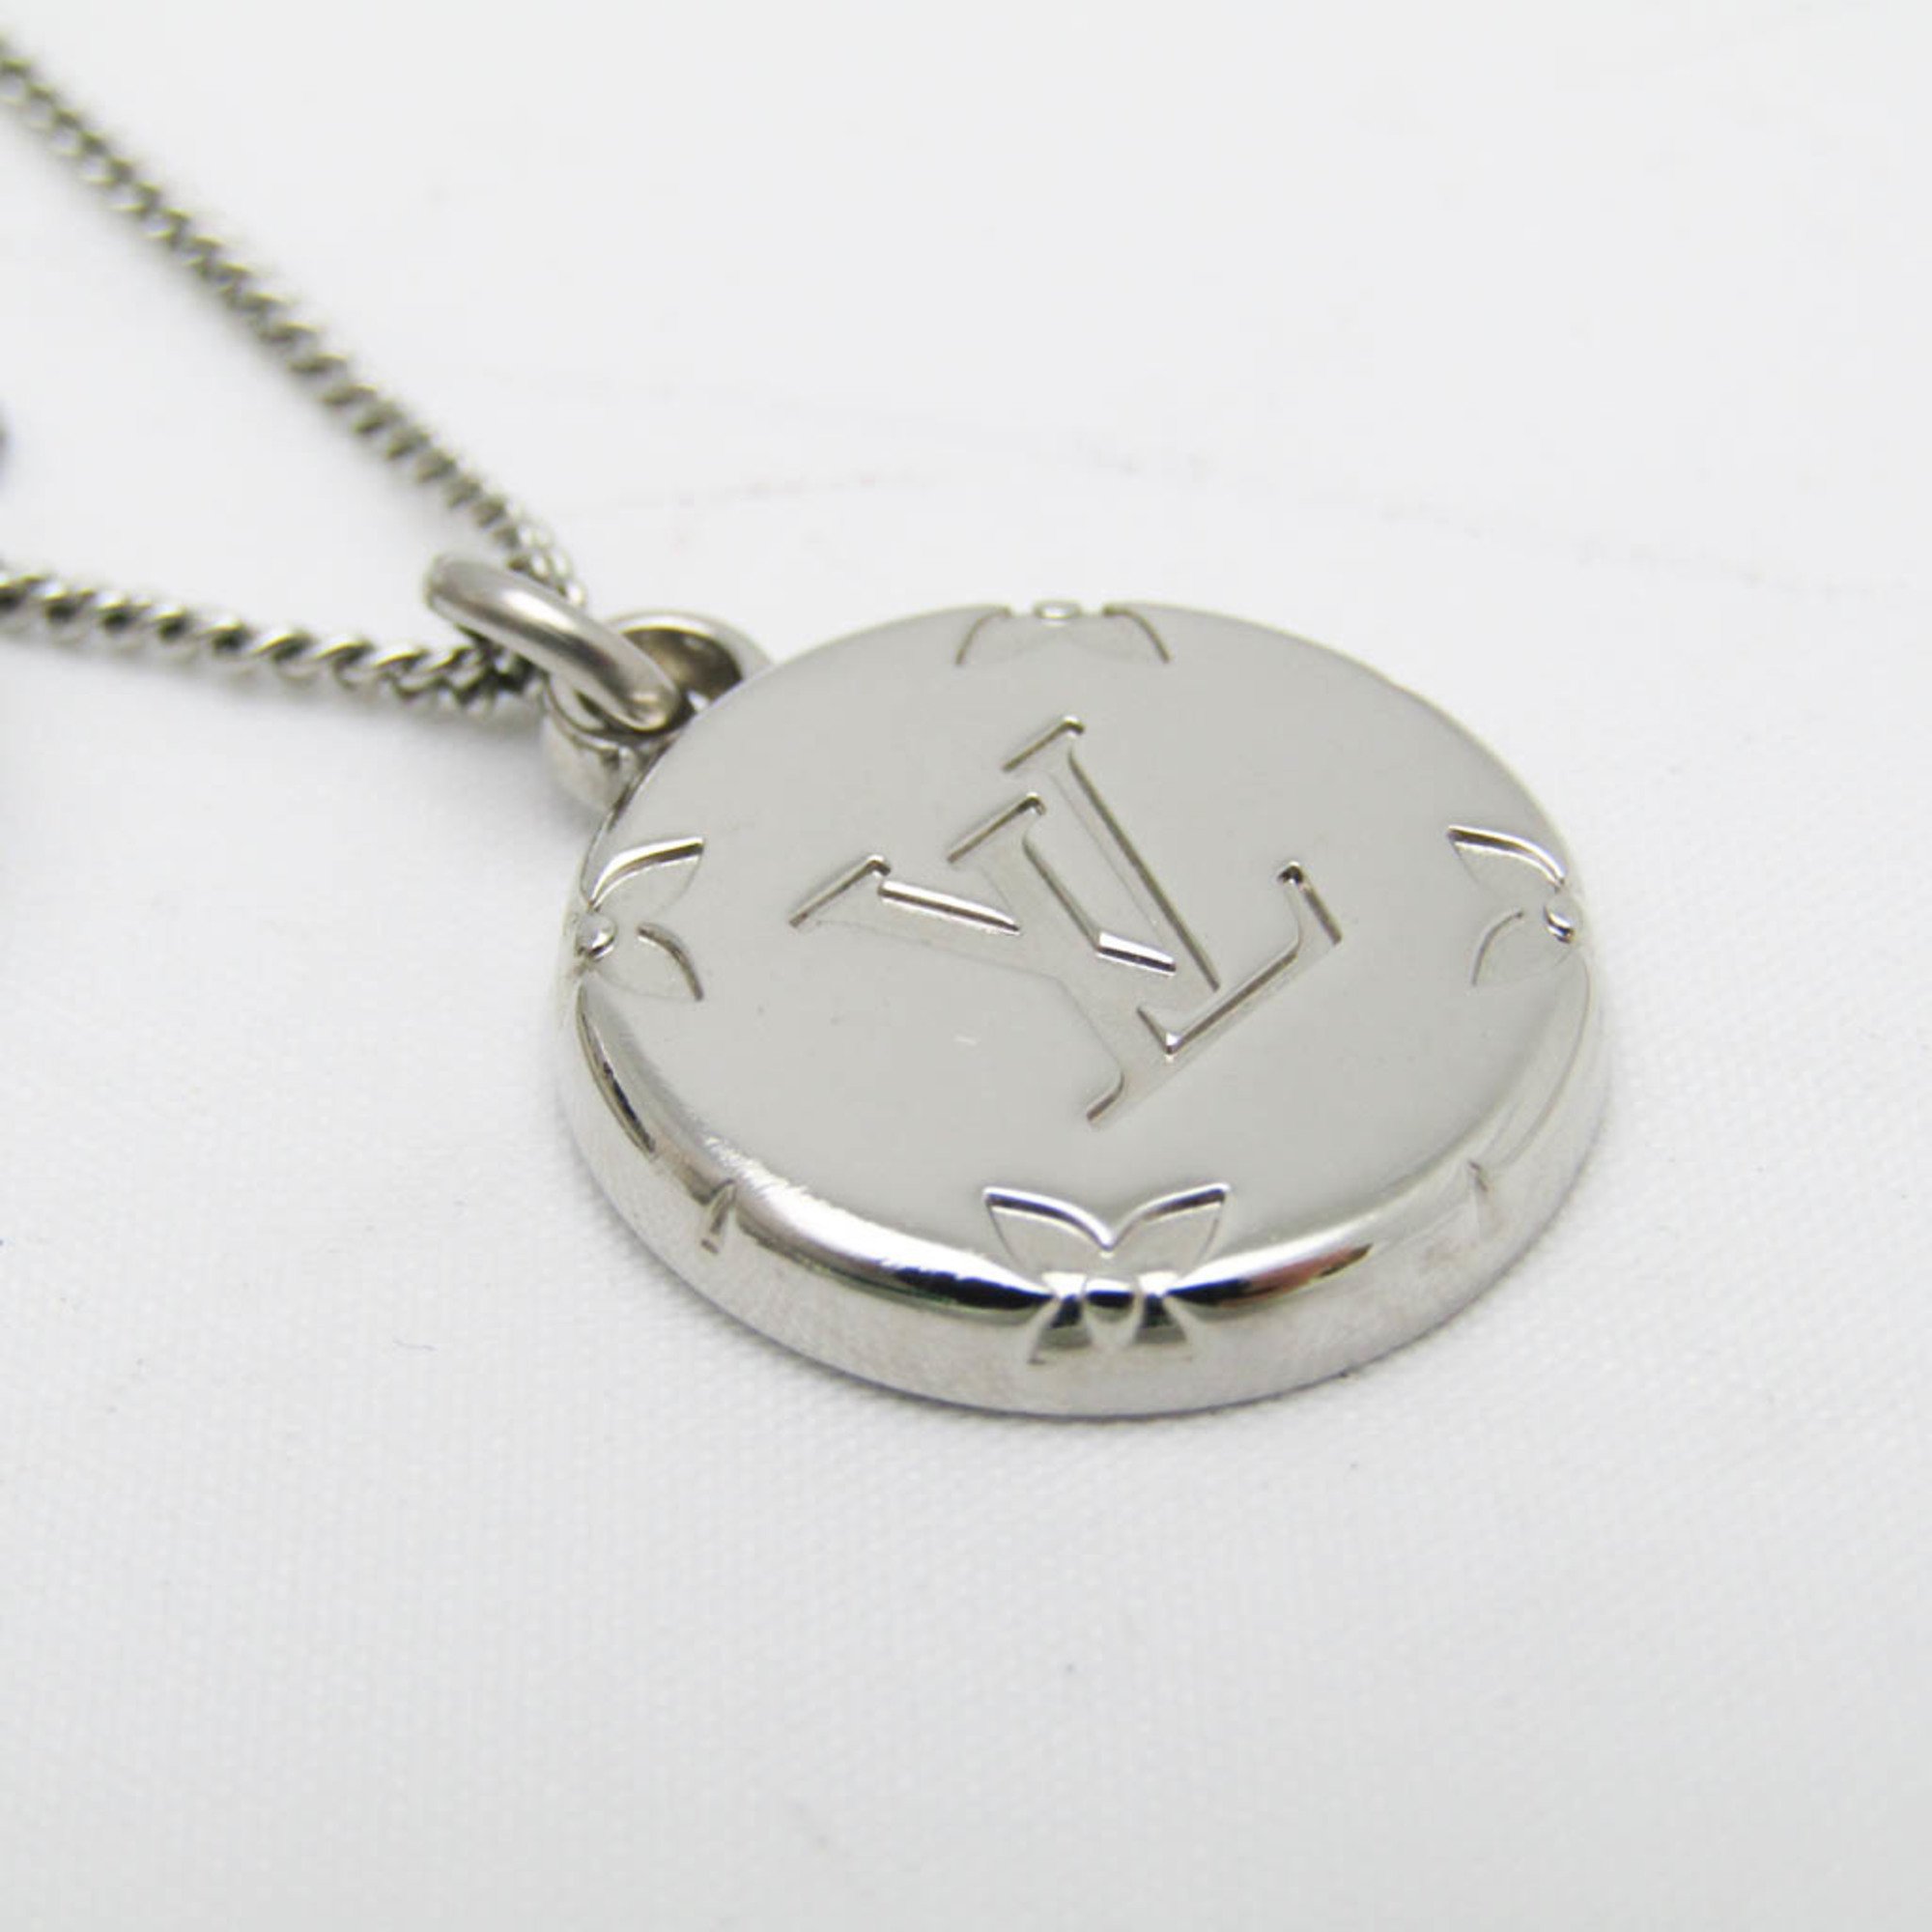 Louis Vuitton Ring Necklace Monogram Monogram Pattern Necklace M62485 Metal Women's Pendant Necklace (Silver)